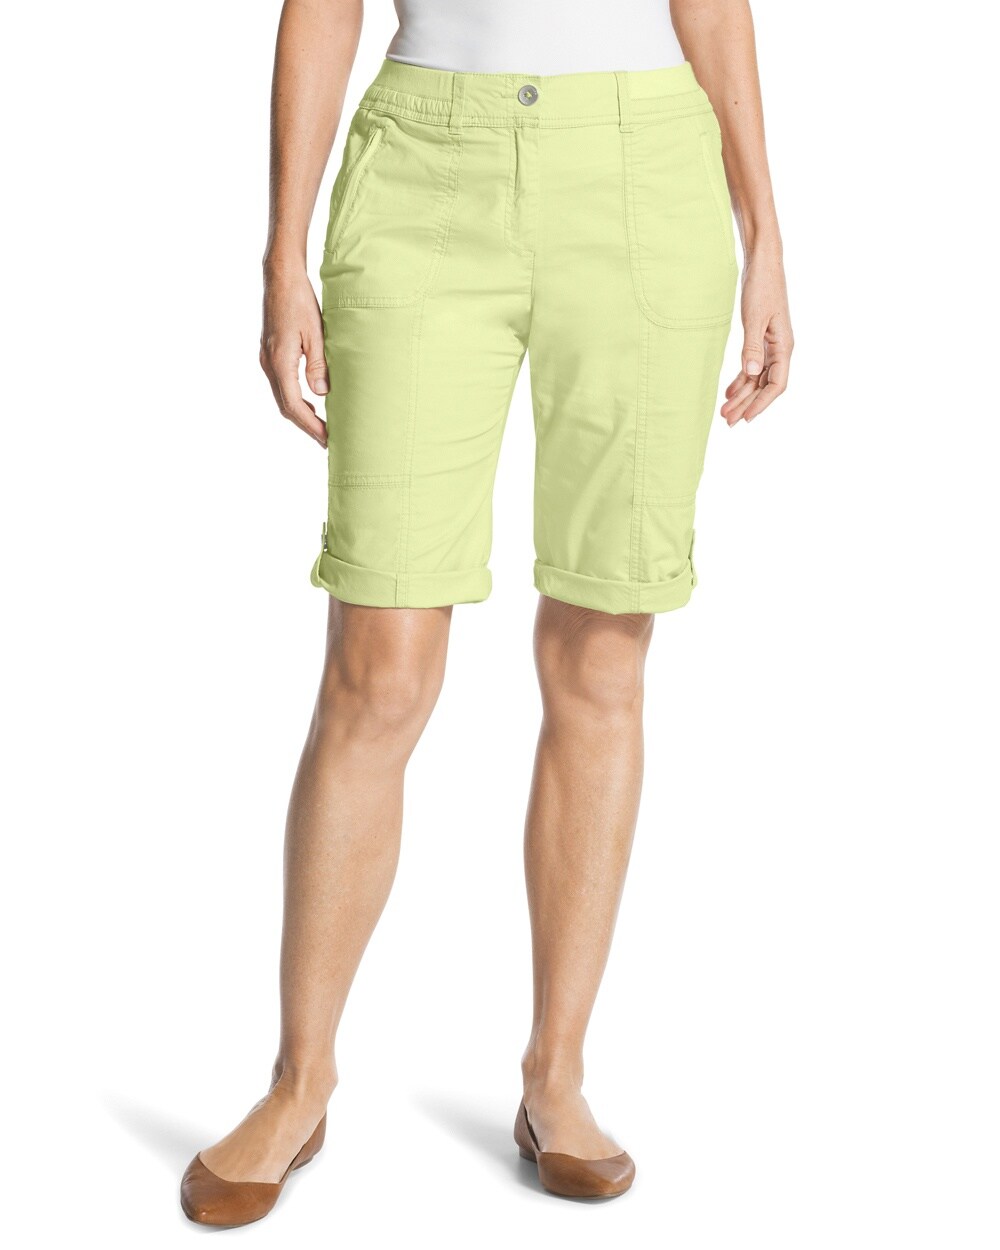 Casual Roll-Cuff Shorts - 11 Inch Inseam